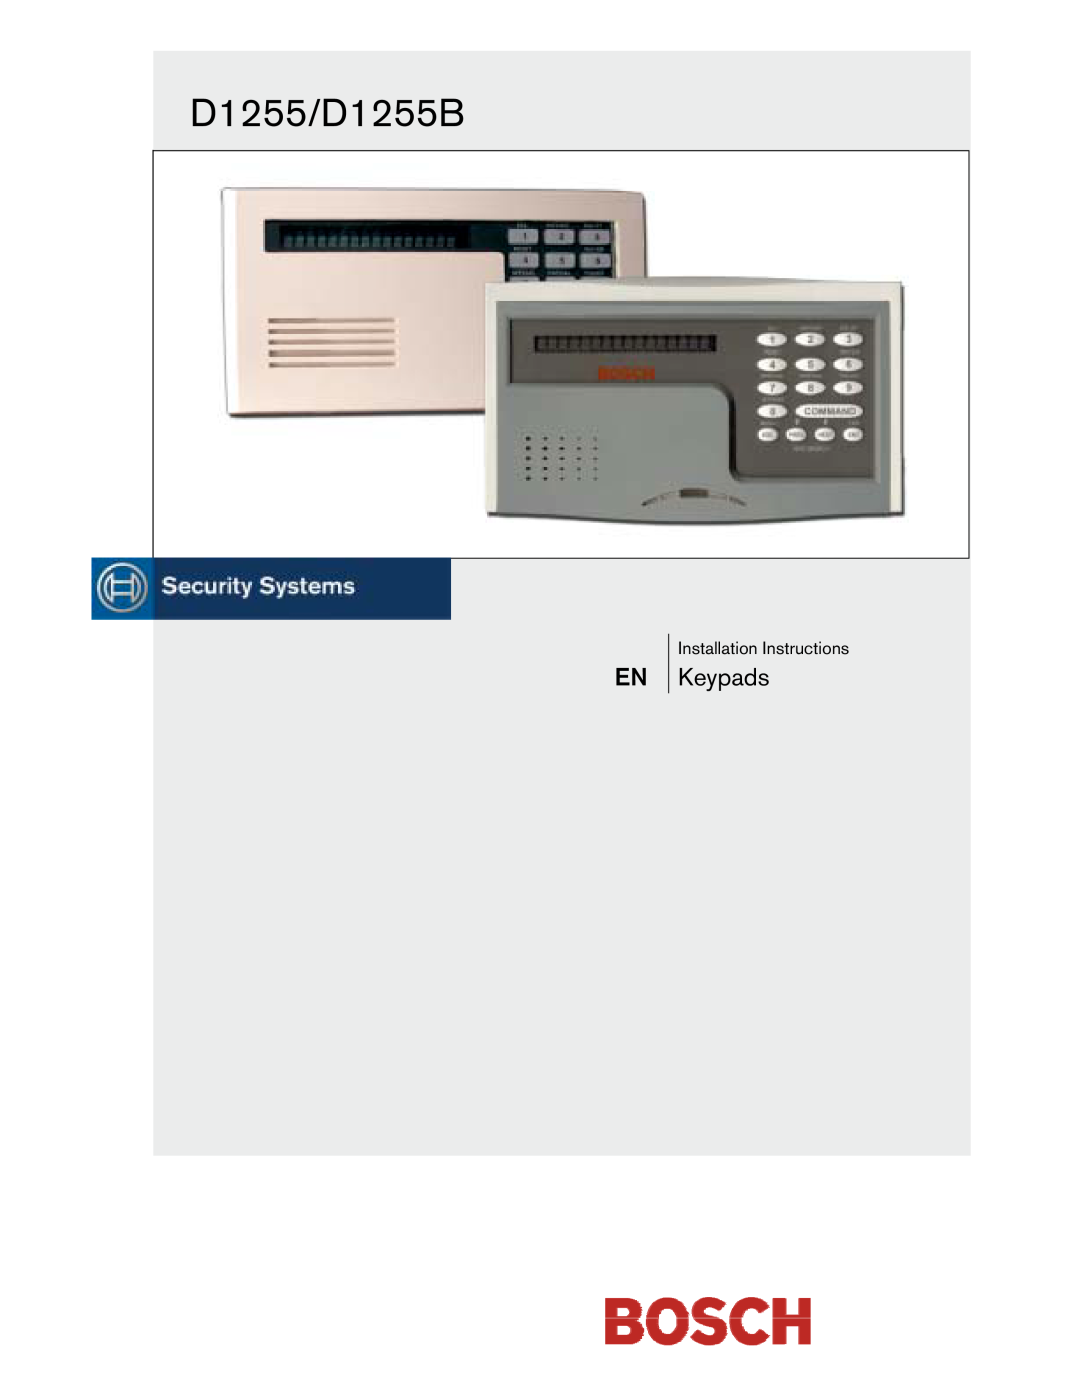 Bosch Appliances installation instructions D1255/D1255B, Keypads 